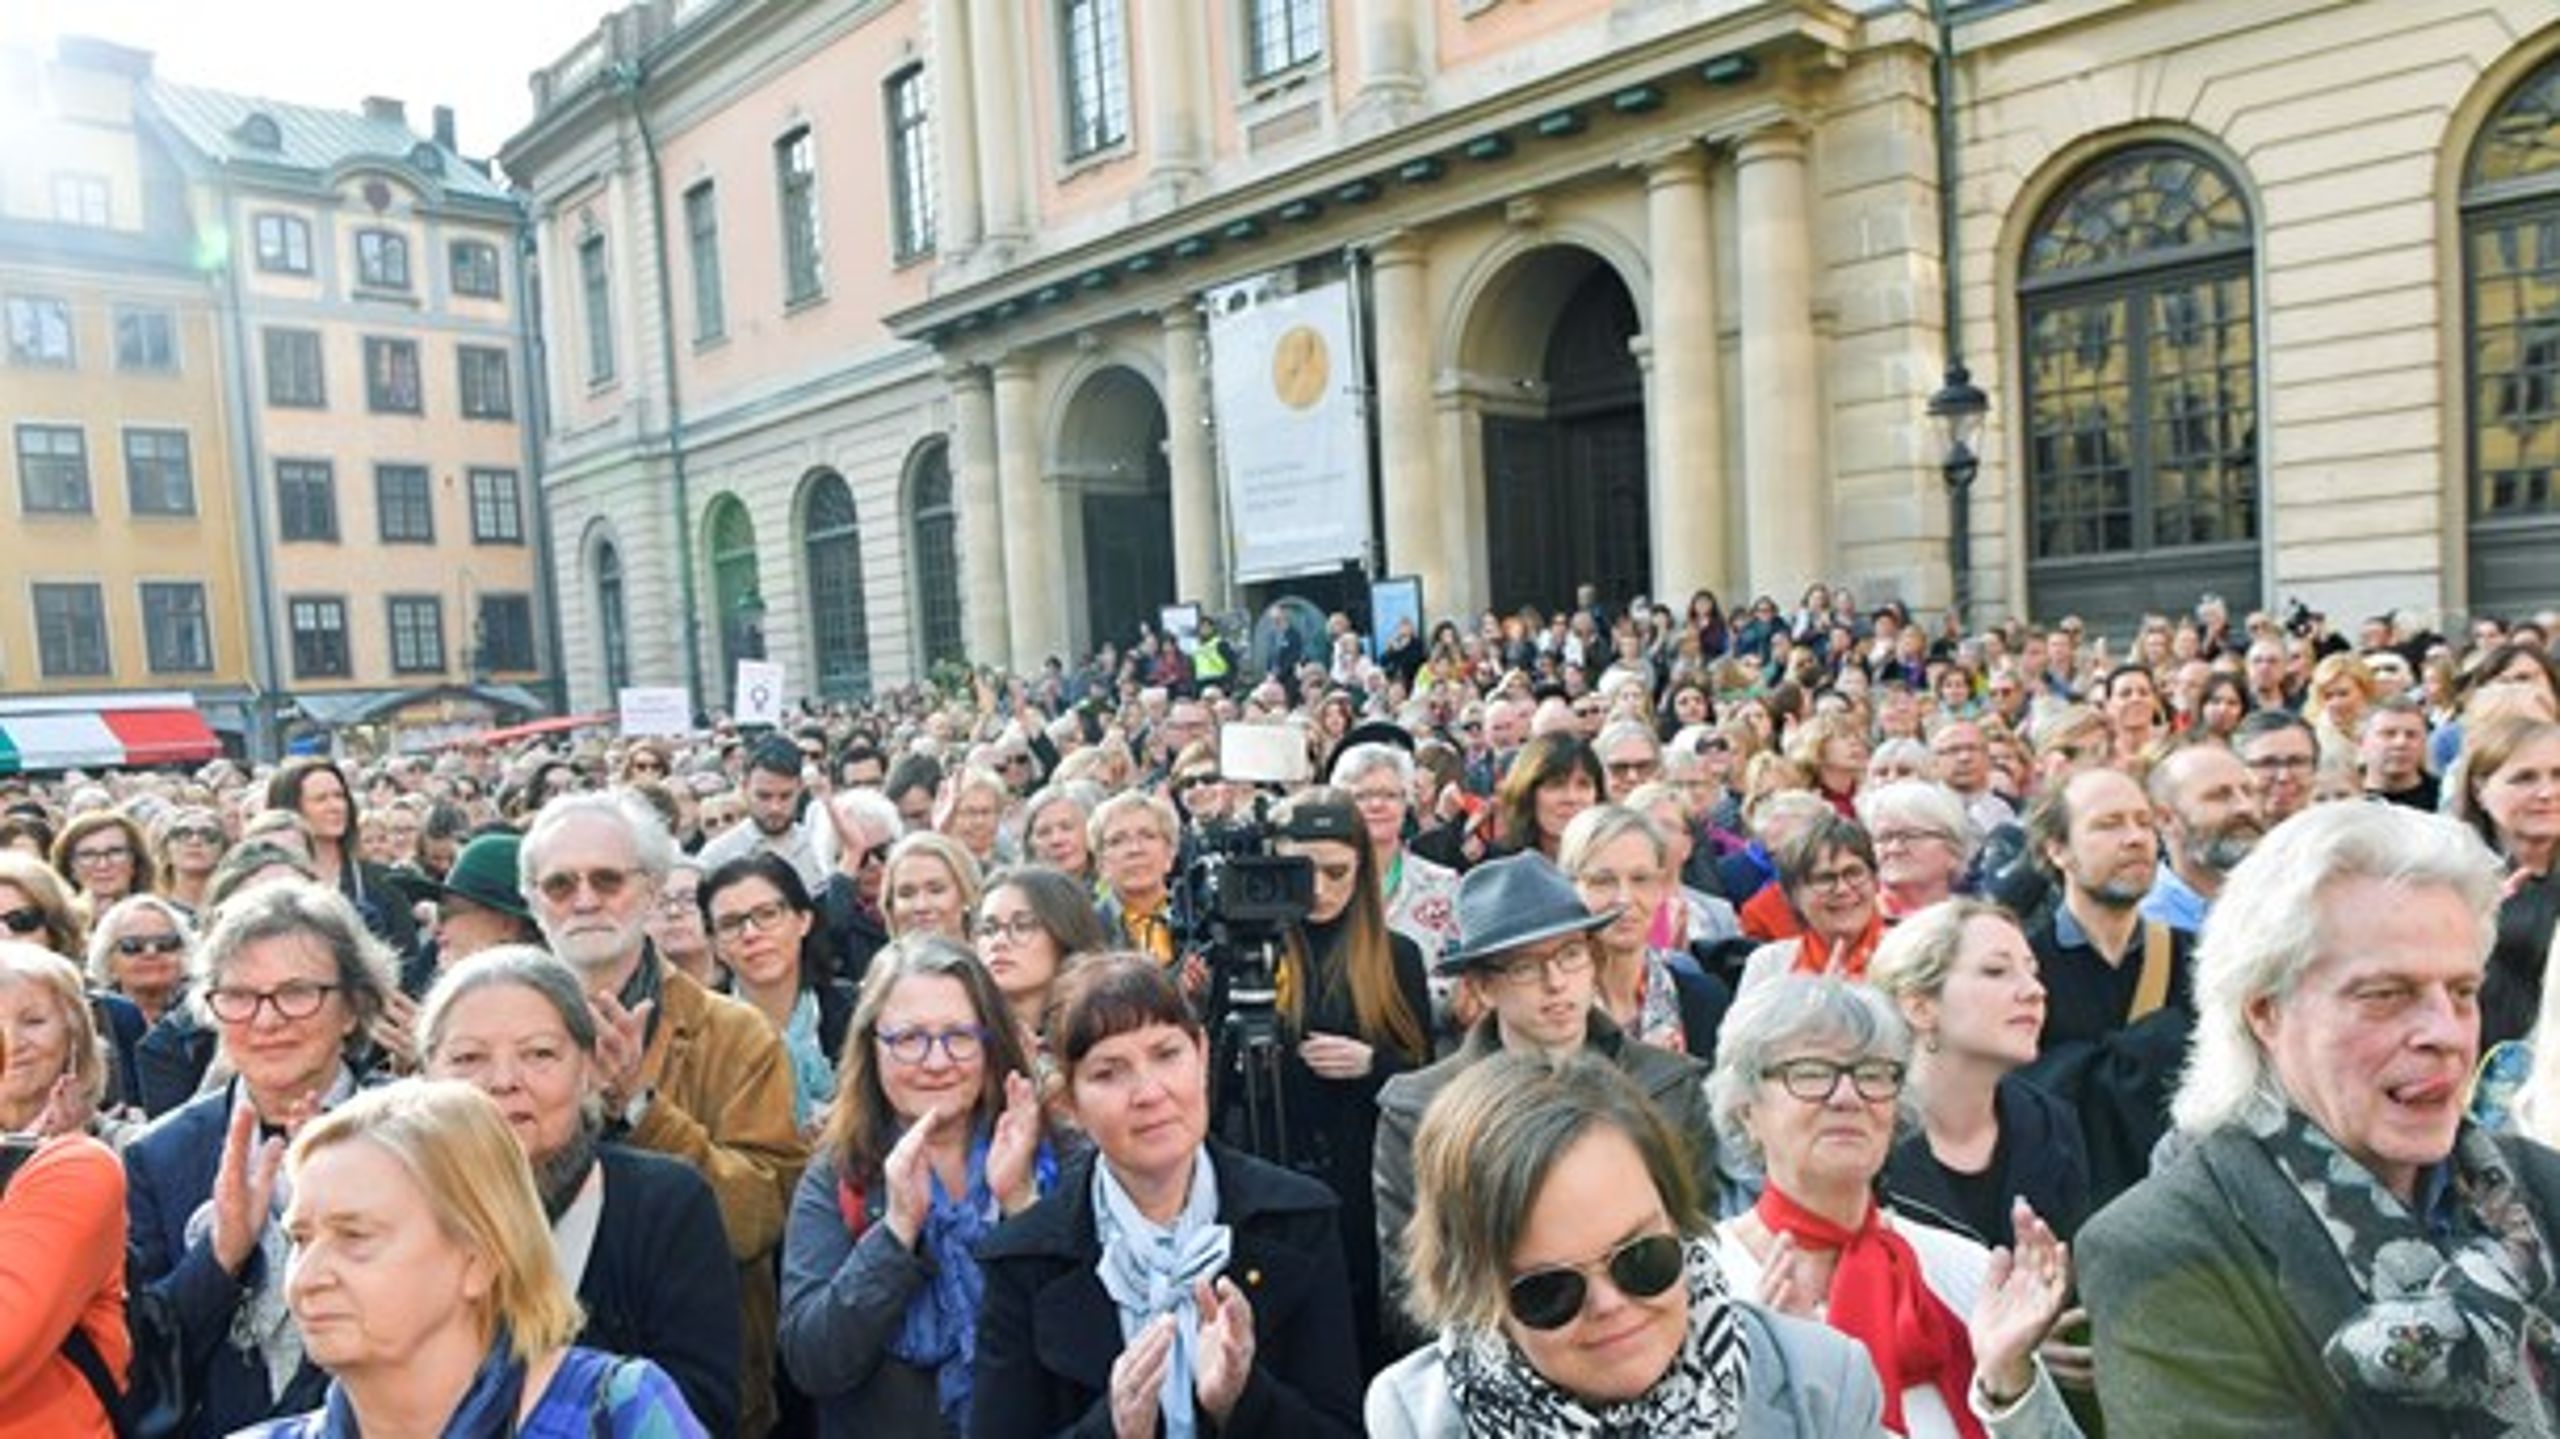 SLØJFEBLUSER Flere tusinde demonstrerede denne uge for at støtte Sara Danius. Det er et eksempel på ideologisk feminisme, skriver Jens Christian Grøndahl.